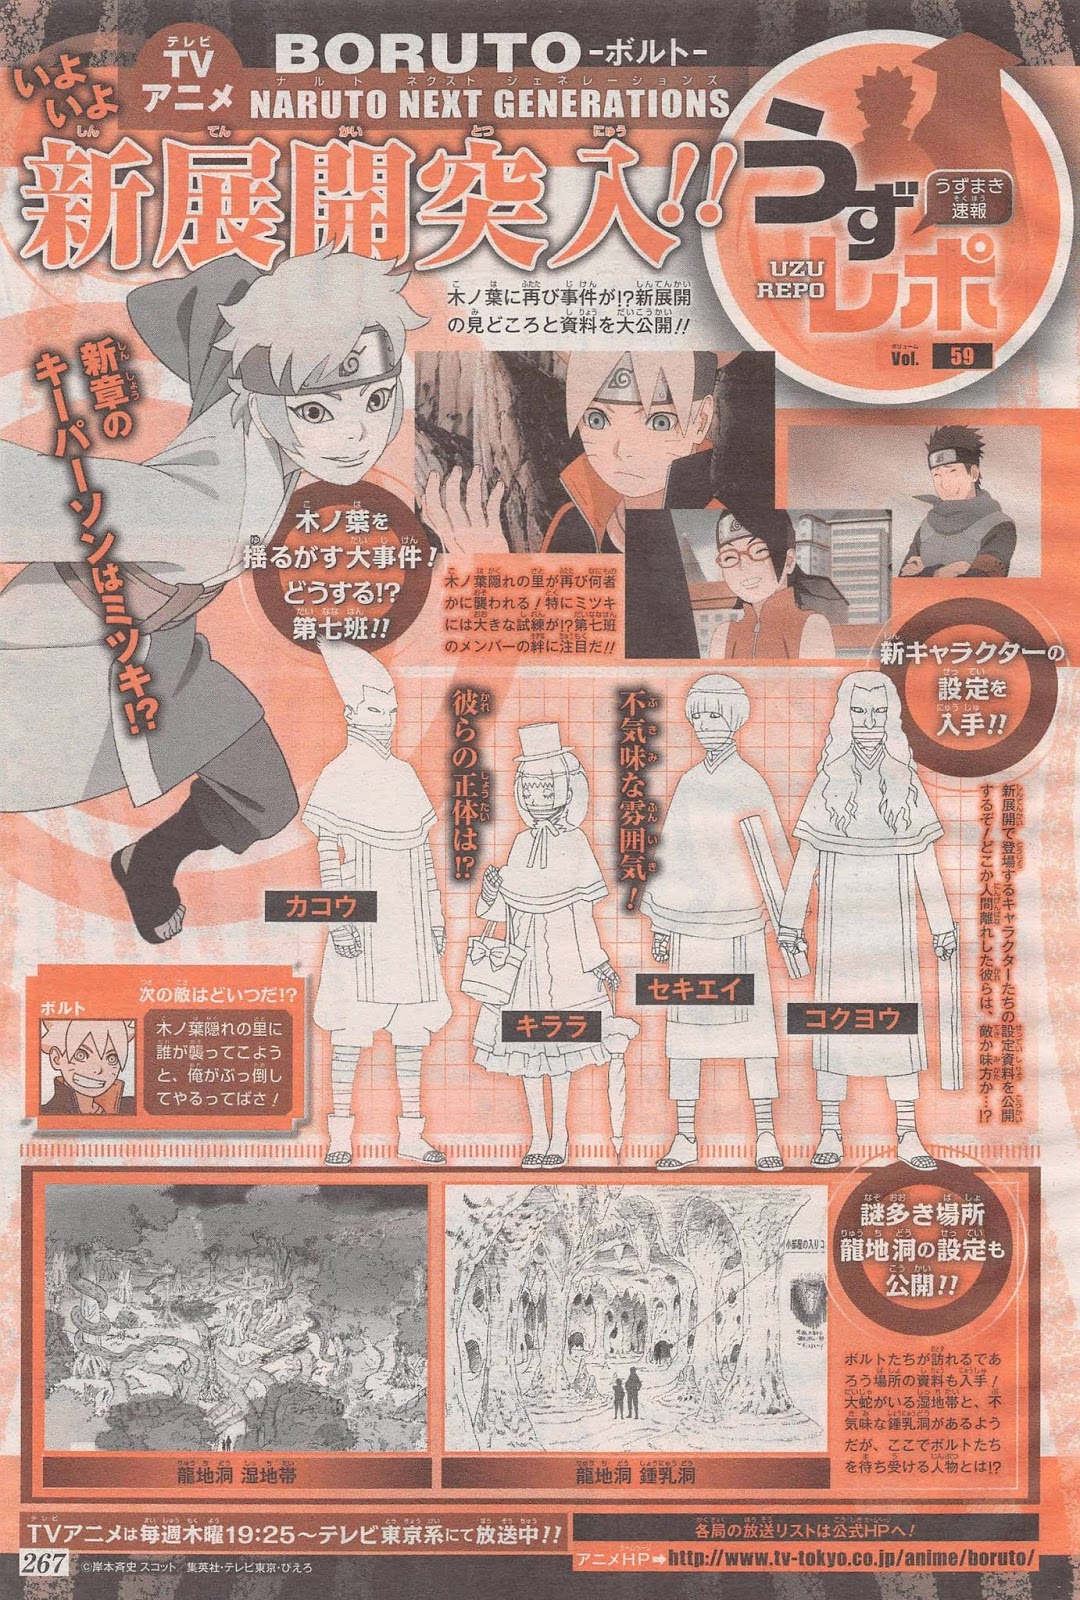 Boruto Uzumaki Naruto Uzumaki Sarada Uchiha Boruto: Naruto Próximas  gerações Portable Network Graphics, naruto, png